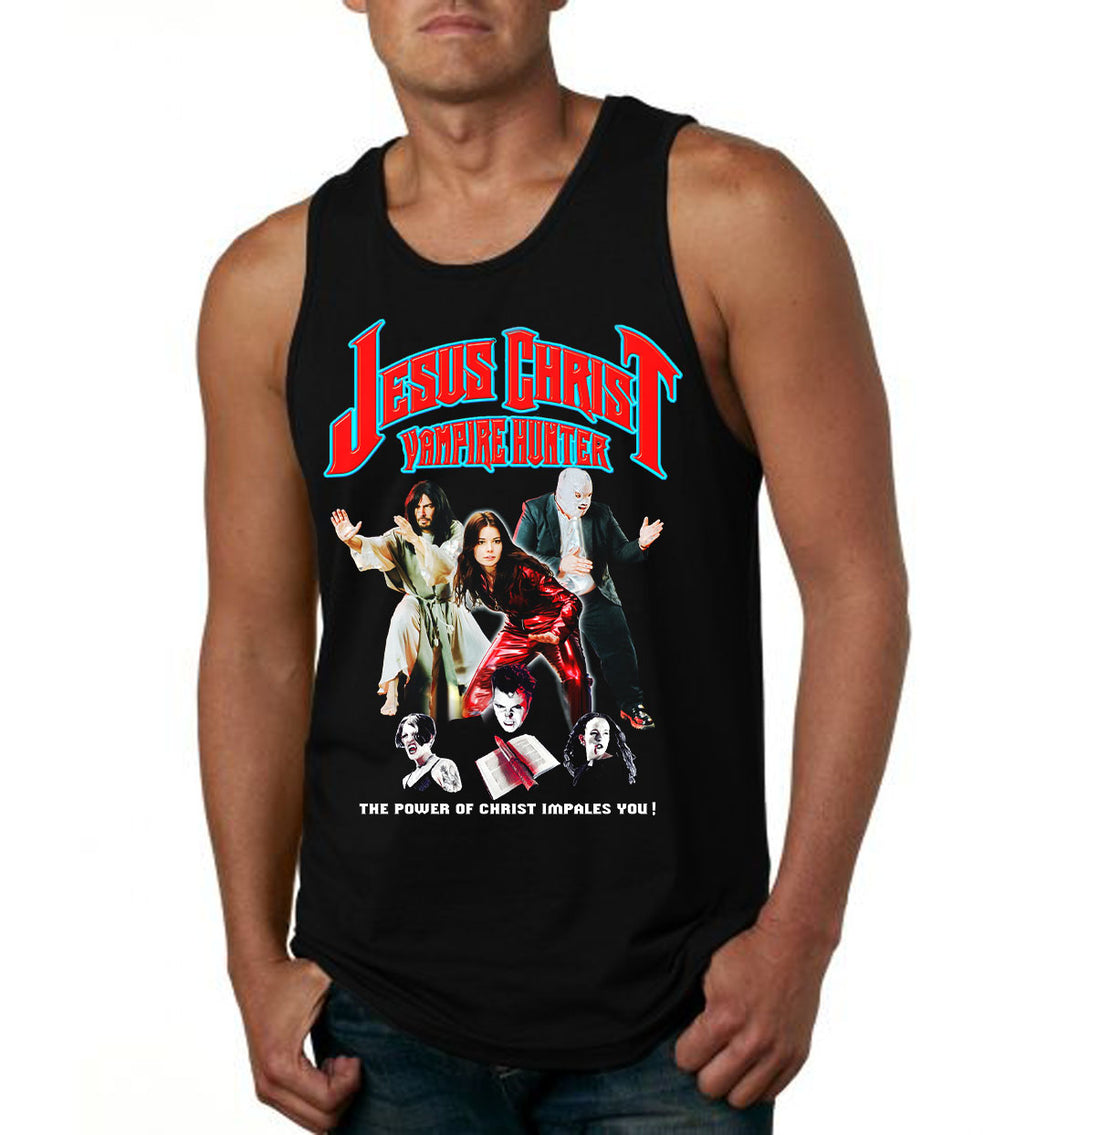 Lucha Movie Club: "JESUS CHRIST VAMPIRE HUNTER" t-shirt